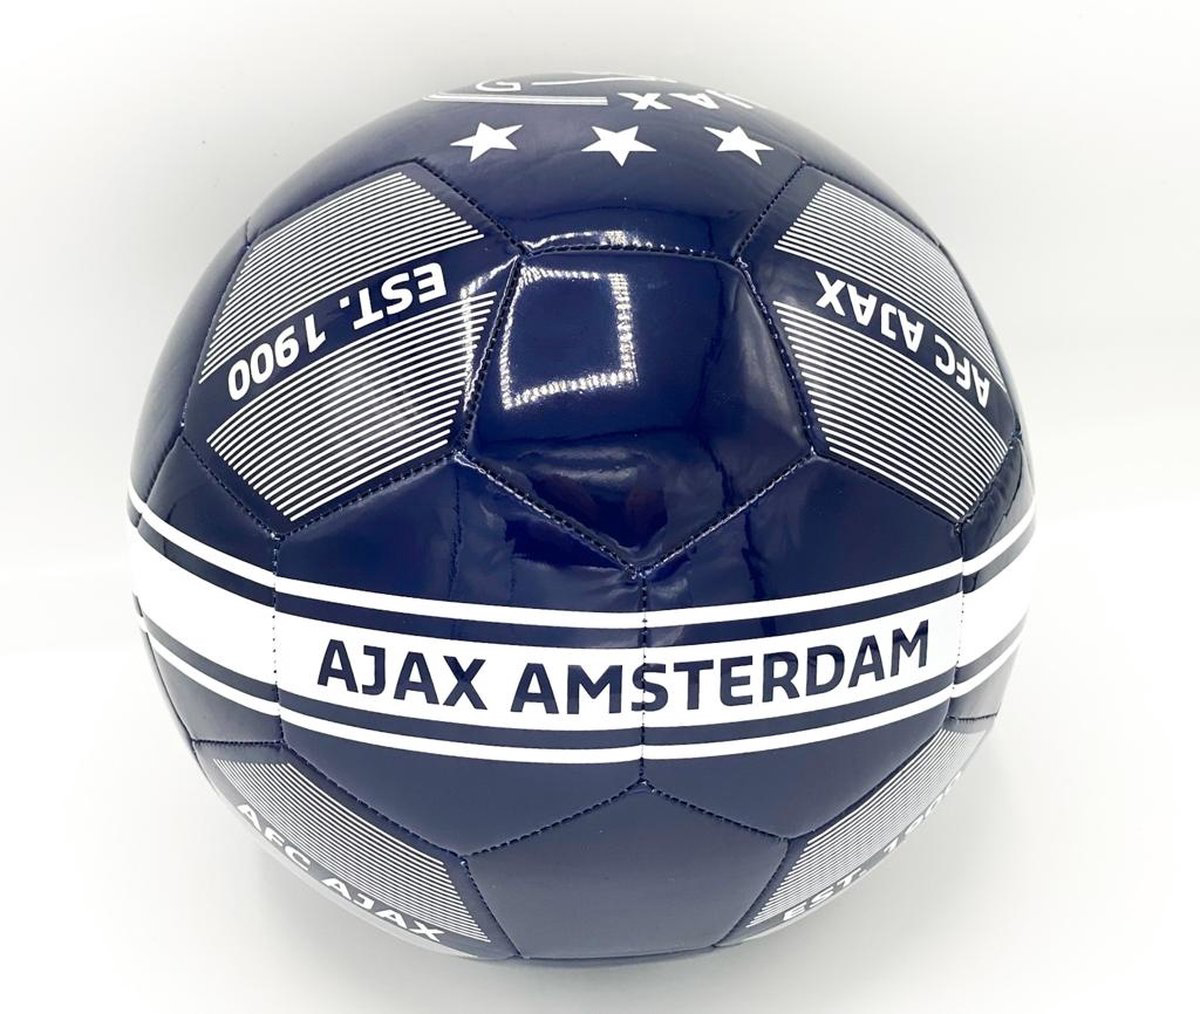 Afbeeldingen van Ajax Voetbal Blauw